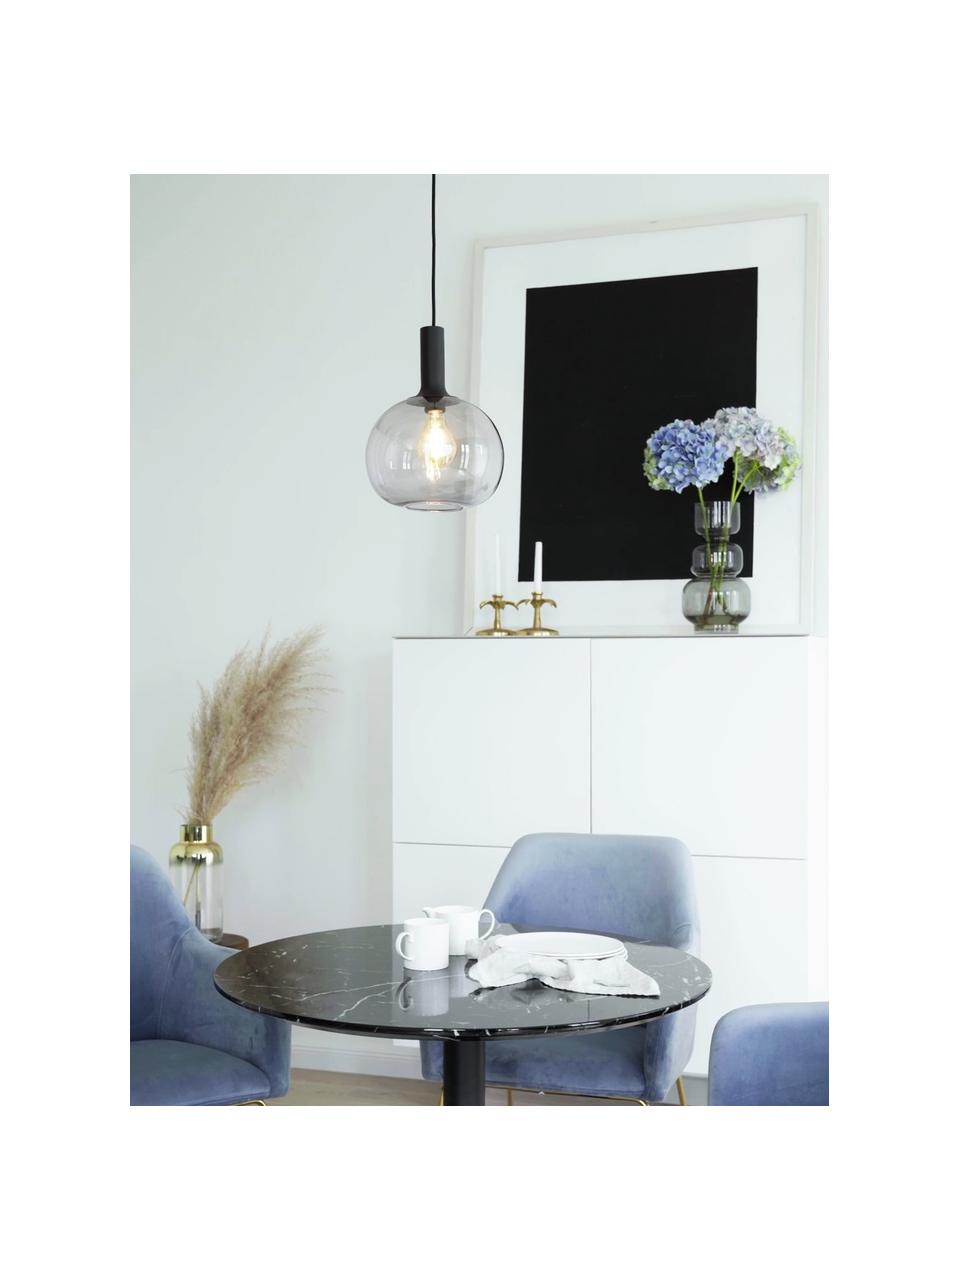 Kleine hanglamp Alton van rookglas, Lampenkap: glas, Baldakijn: gecoat metaal, Zwart, grijs, Ø 25 x H 33 cm